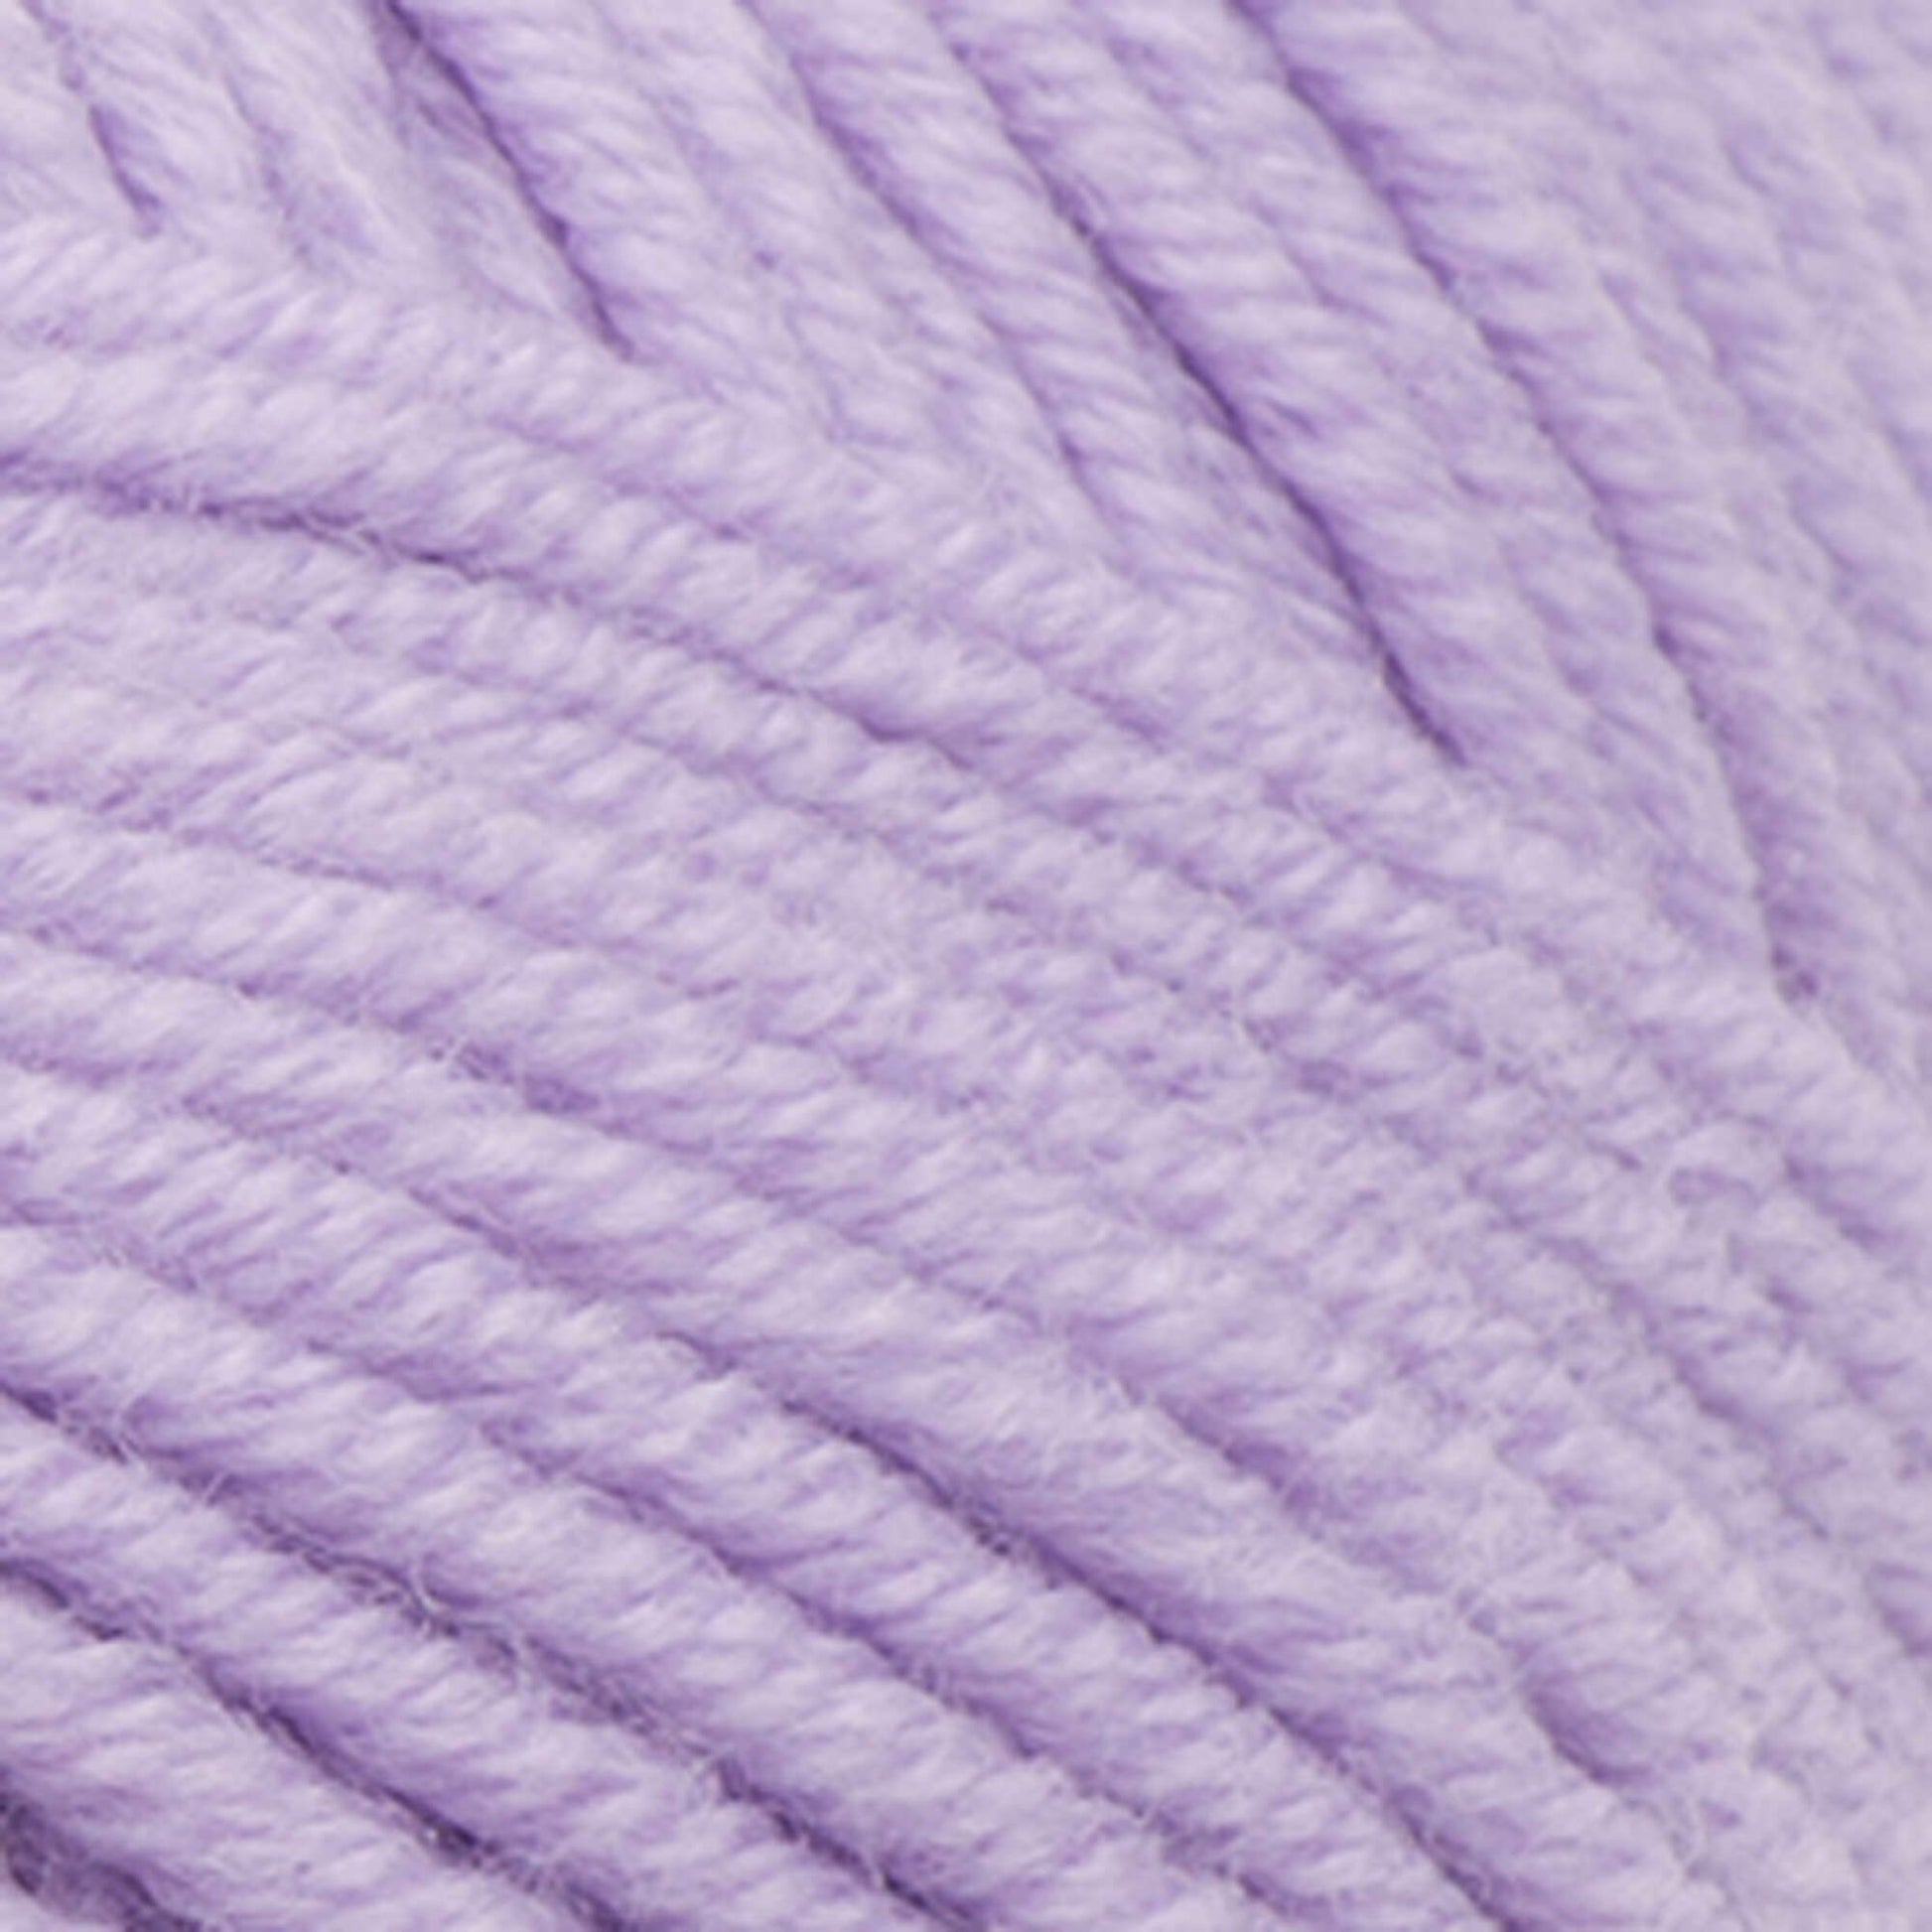 Sugar Bush Bold Yarn - Discontinued Lavender Frost